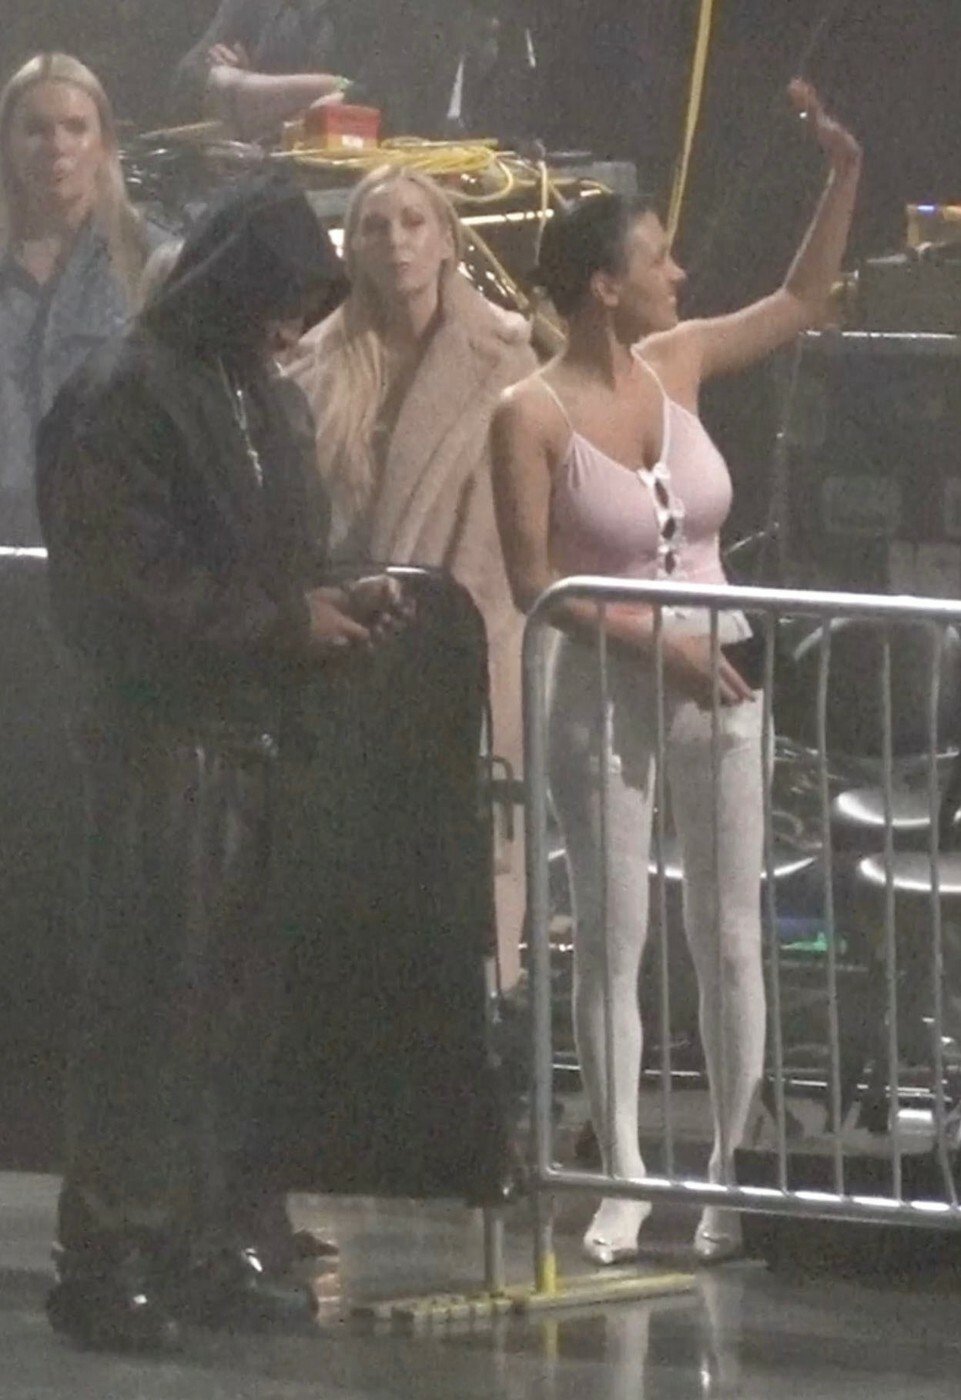 Kim Kardashianová a Bianca Censoriová se potkaly na koncertu Kanye Westa.